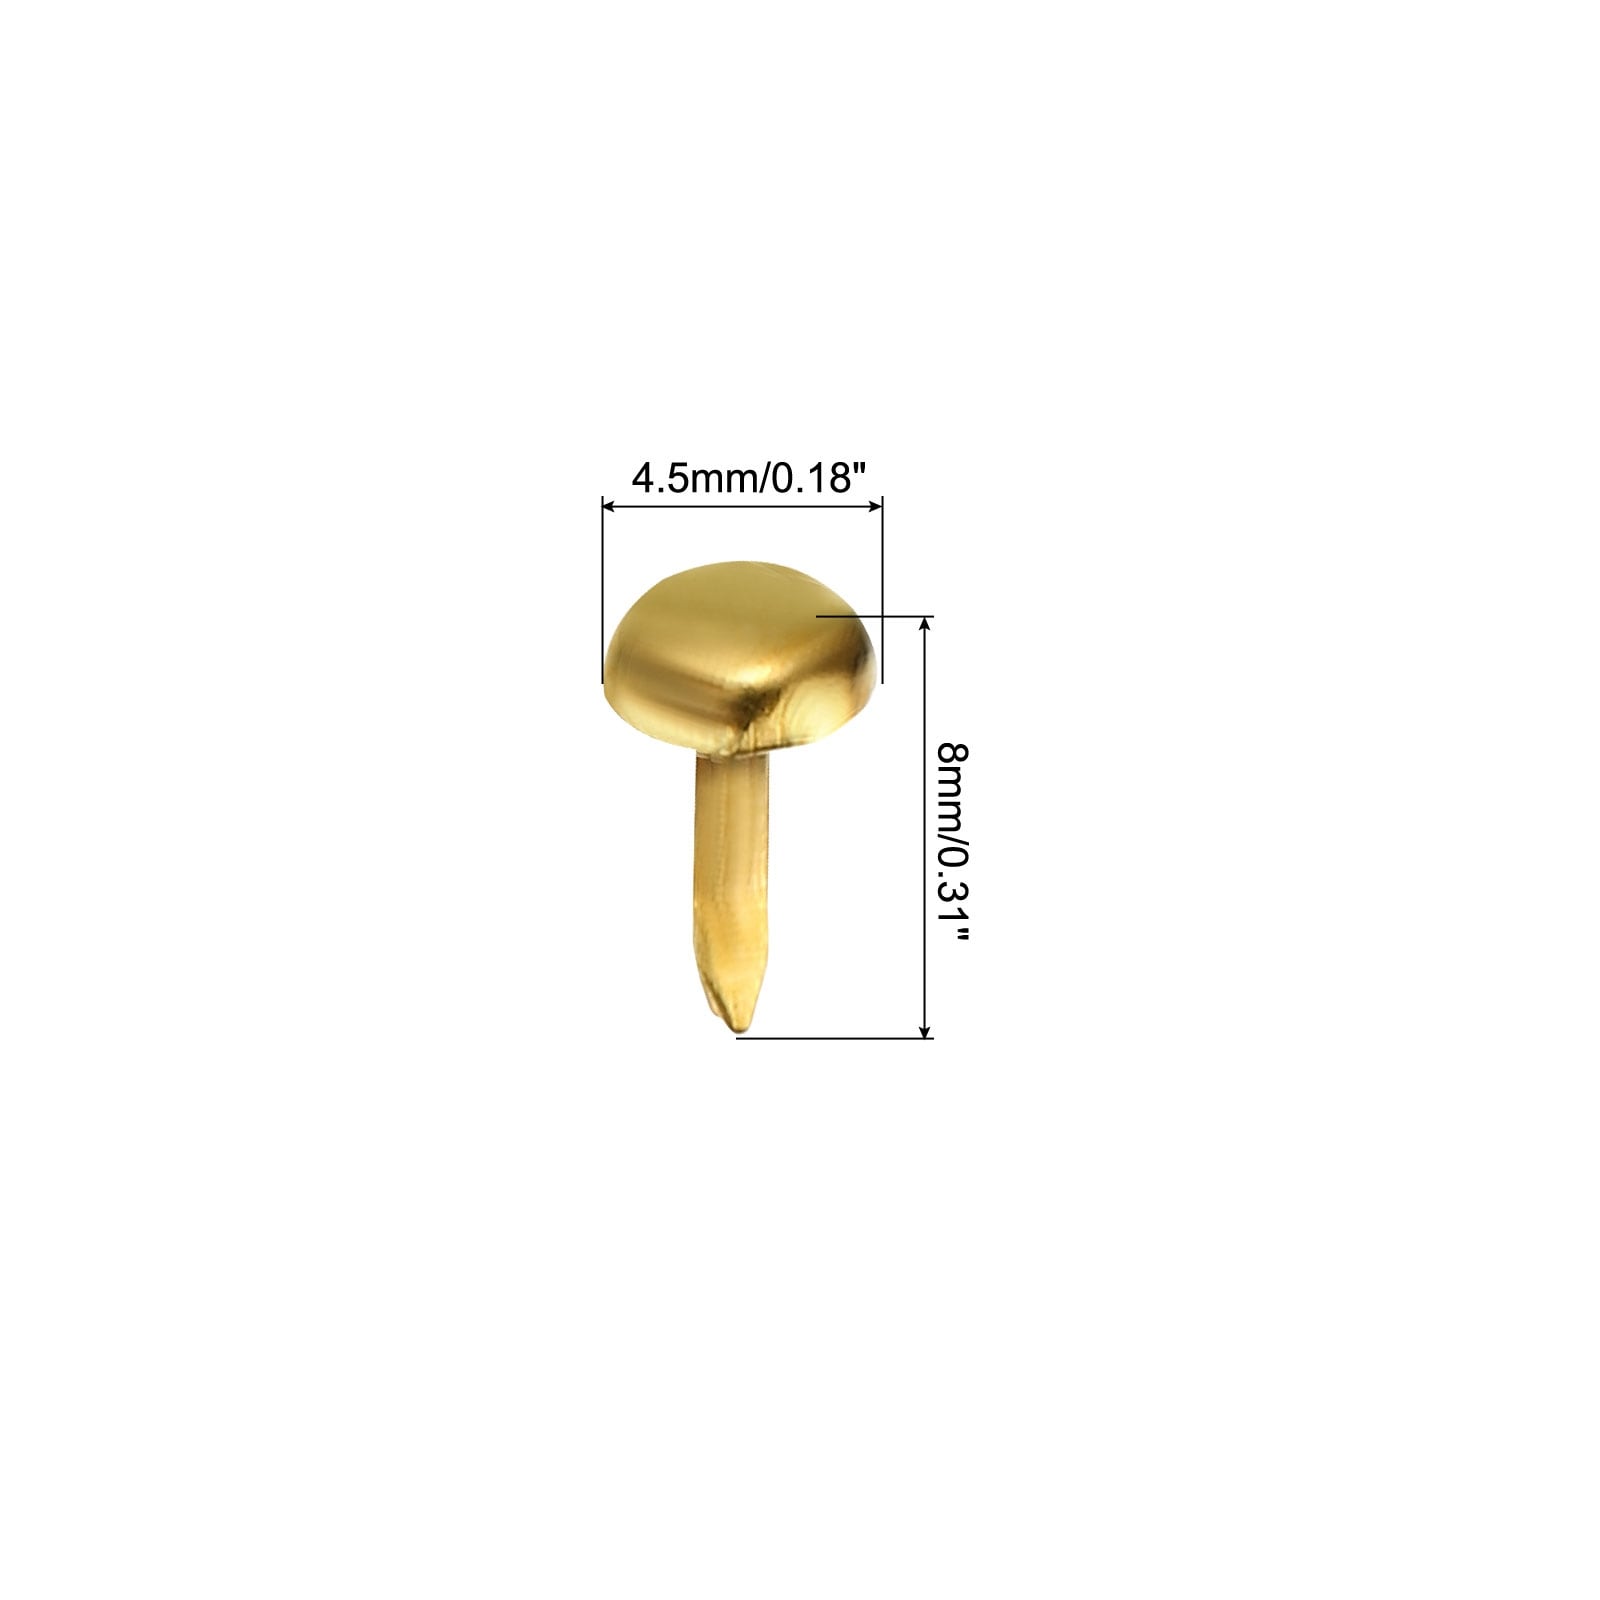 300Pcs Split Pins, 10mm Round Brass Metal Paper Fasteners Brads